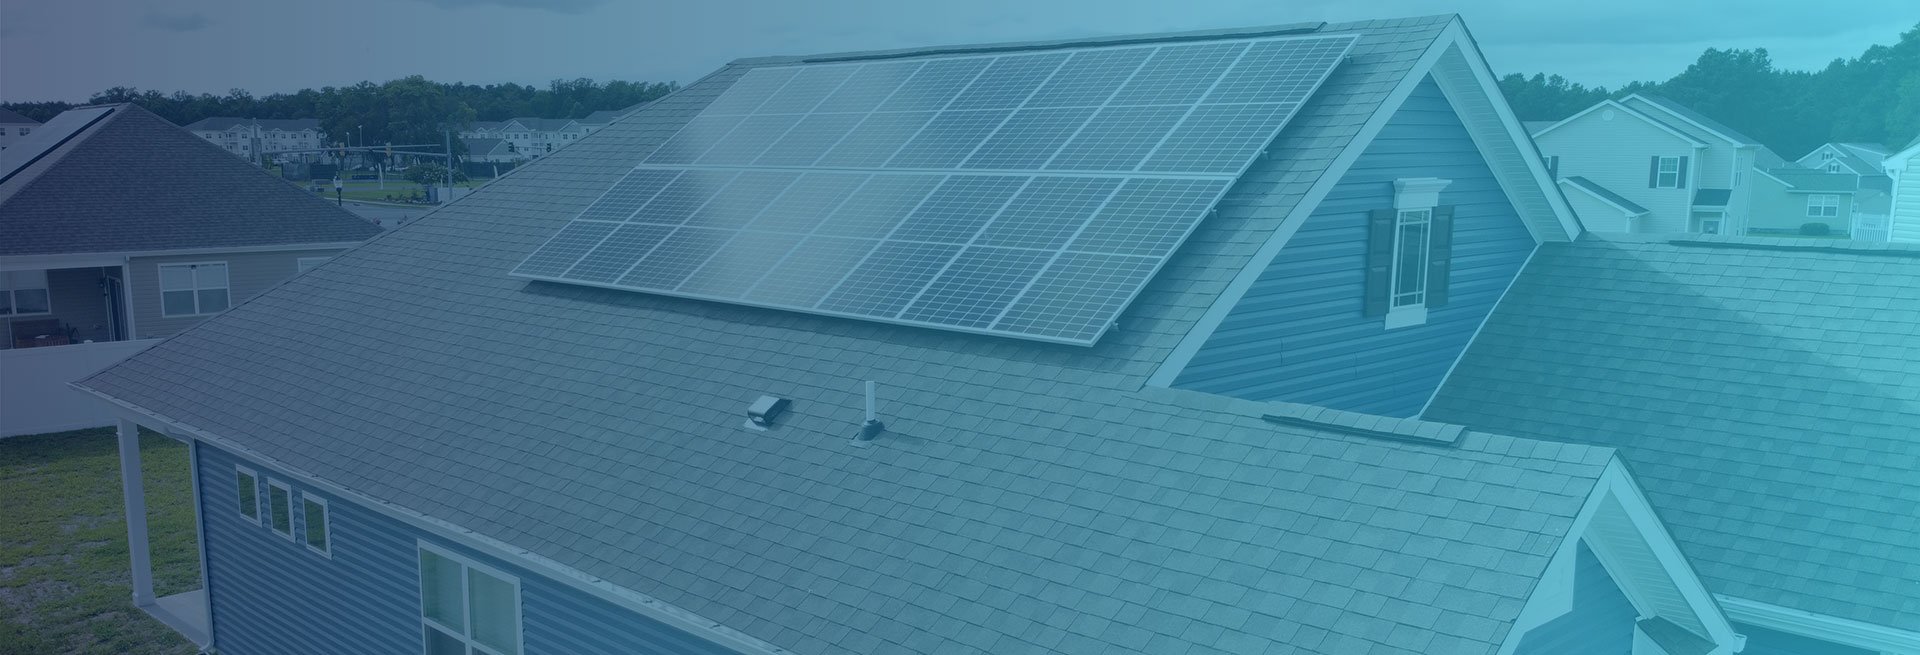 solar-panels-on-home-residential-header